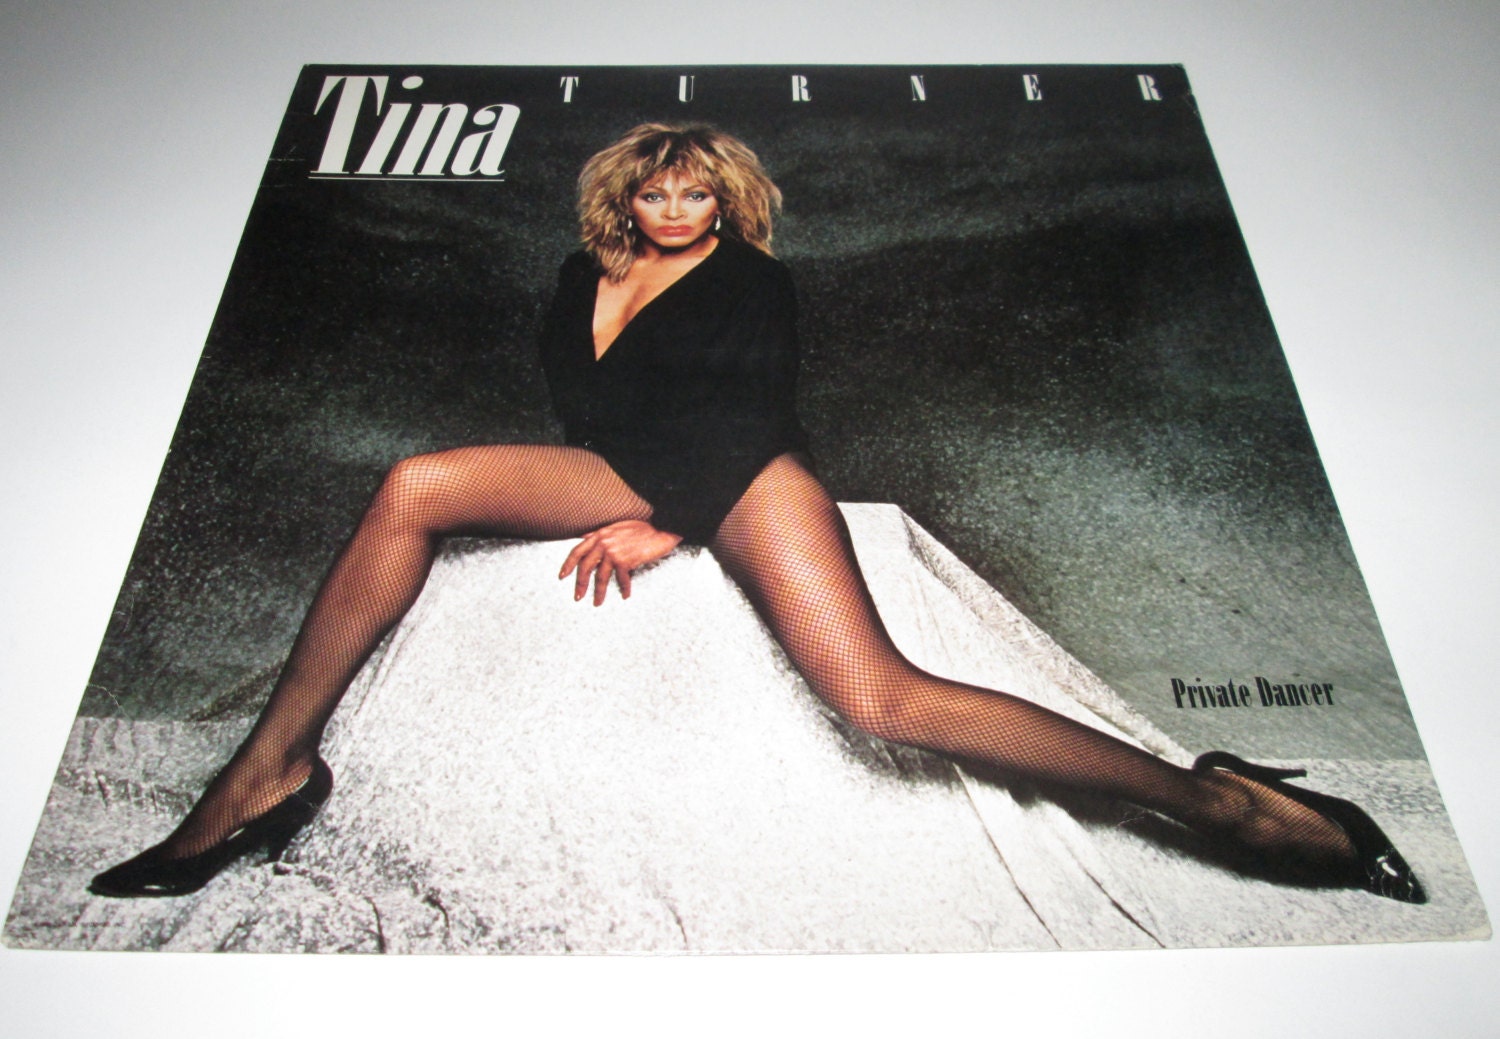 Vinyl Record Album Tina Turner Private Dancer 1983 Capitol Records LP 1980s Music Pop Music Dance Music Rock Music